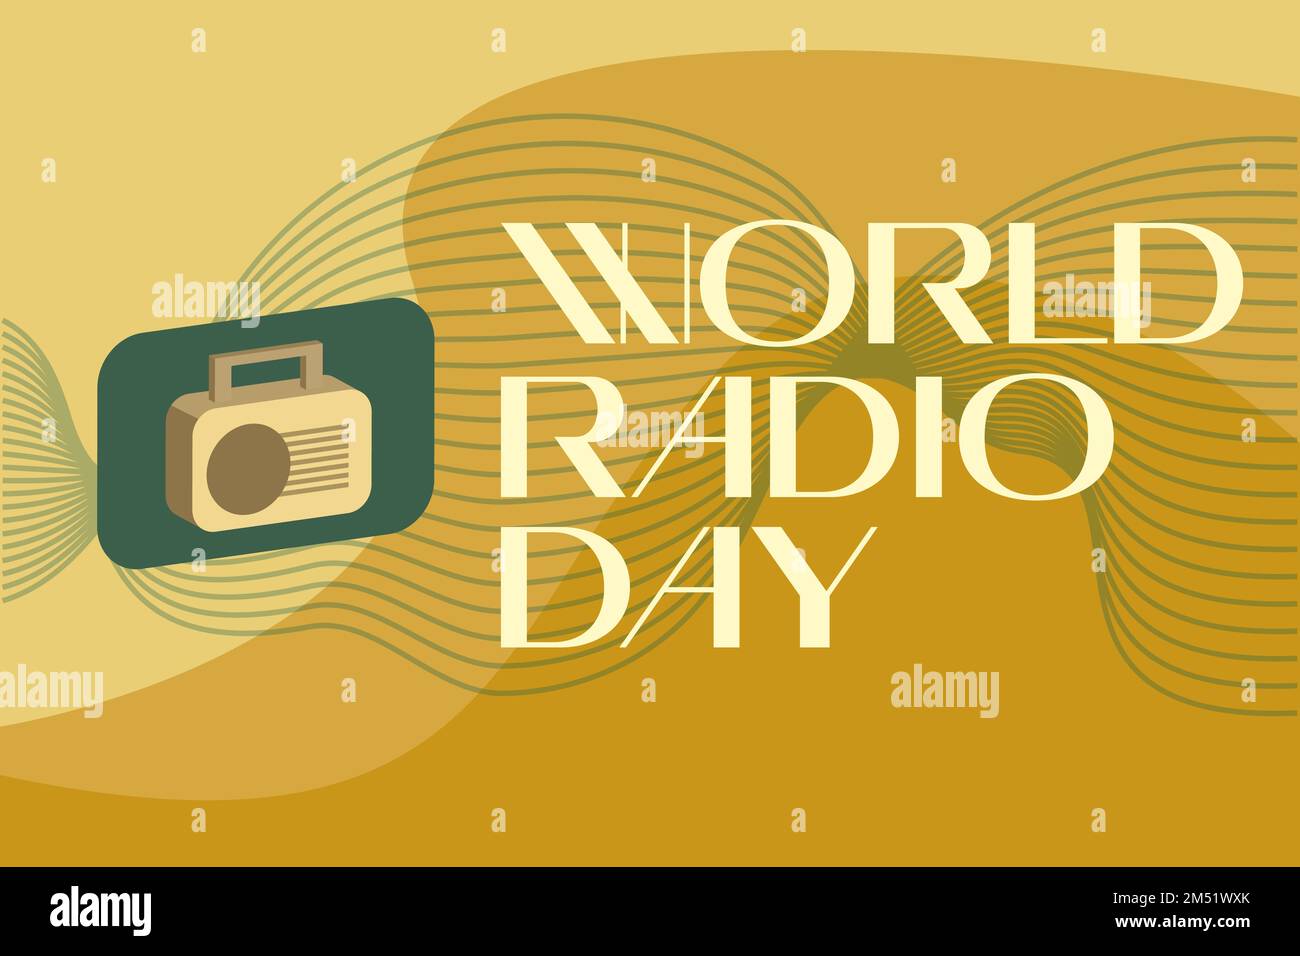 Vertikales Banner für den World Radio Day in der Sendung, kreativ. Februar 13. In einem realistischen Stil, das Funkgerät auf einem grünen abstrakten Hintergrund. Vektor Stock Vektor